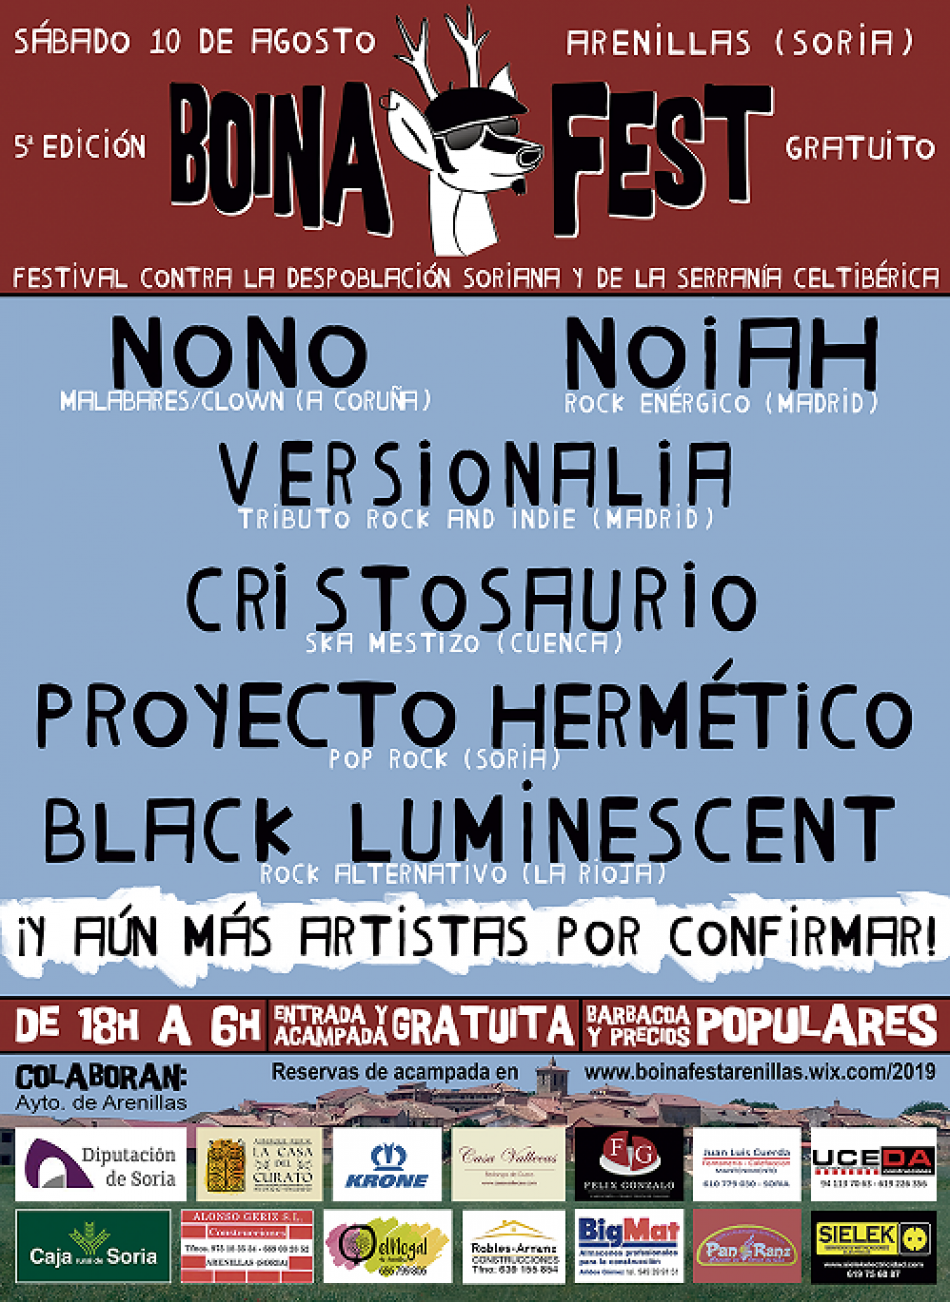 Cristosaurio, Proyecto Hermético y Black Luminescent representarán a la Serranía Celtibérica  en el 1er festival contra la despoblación Boina Fest